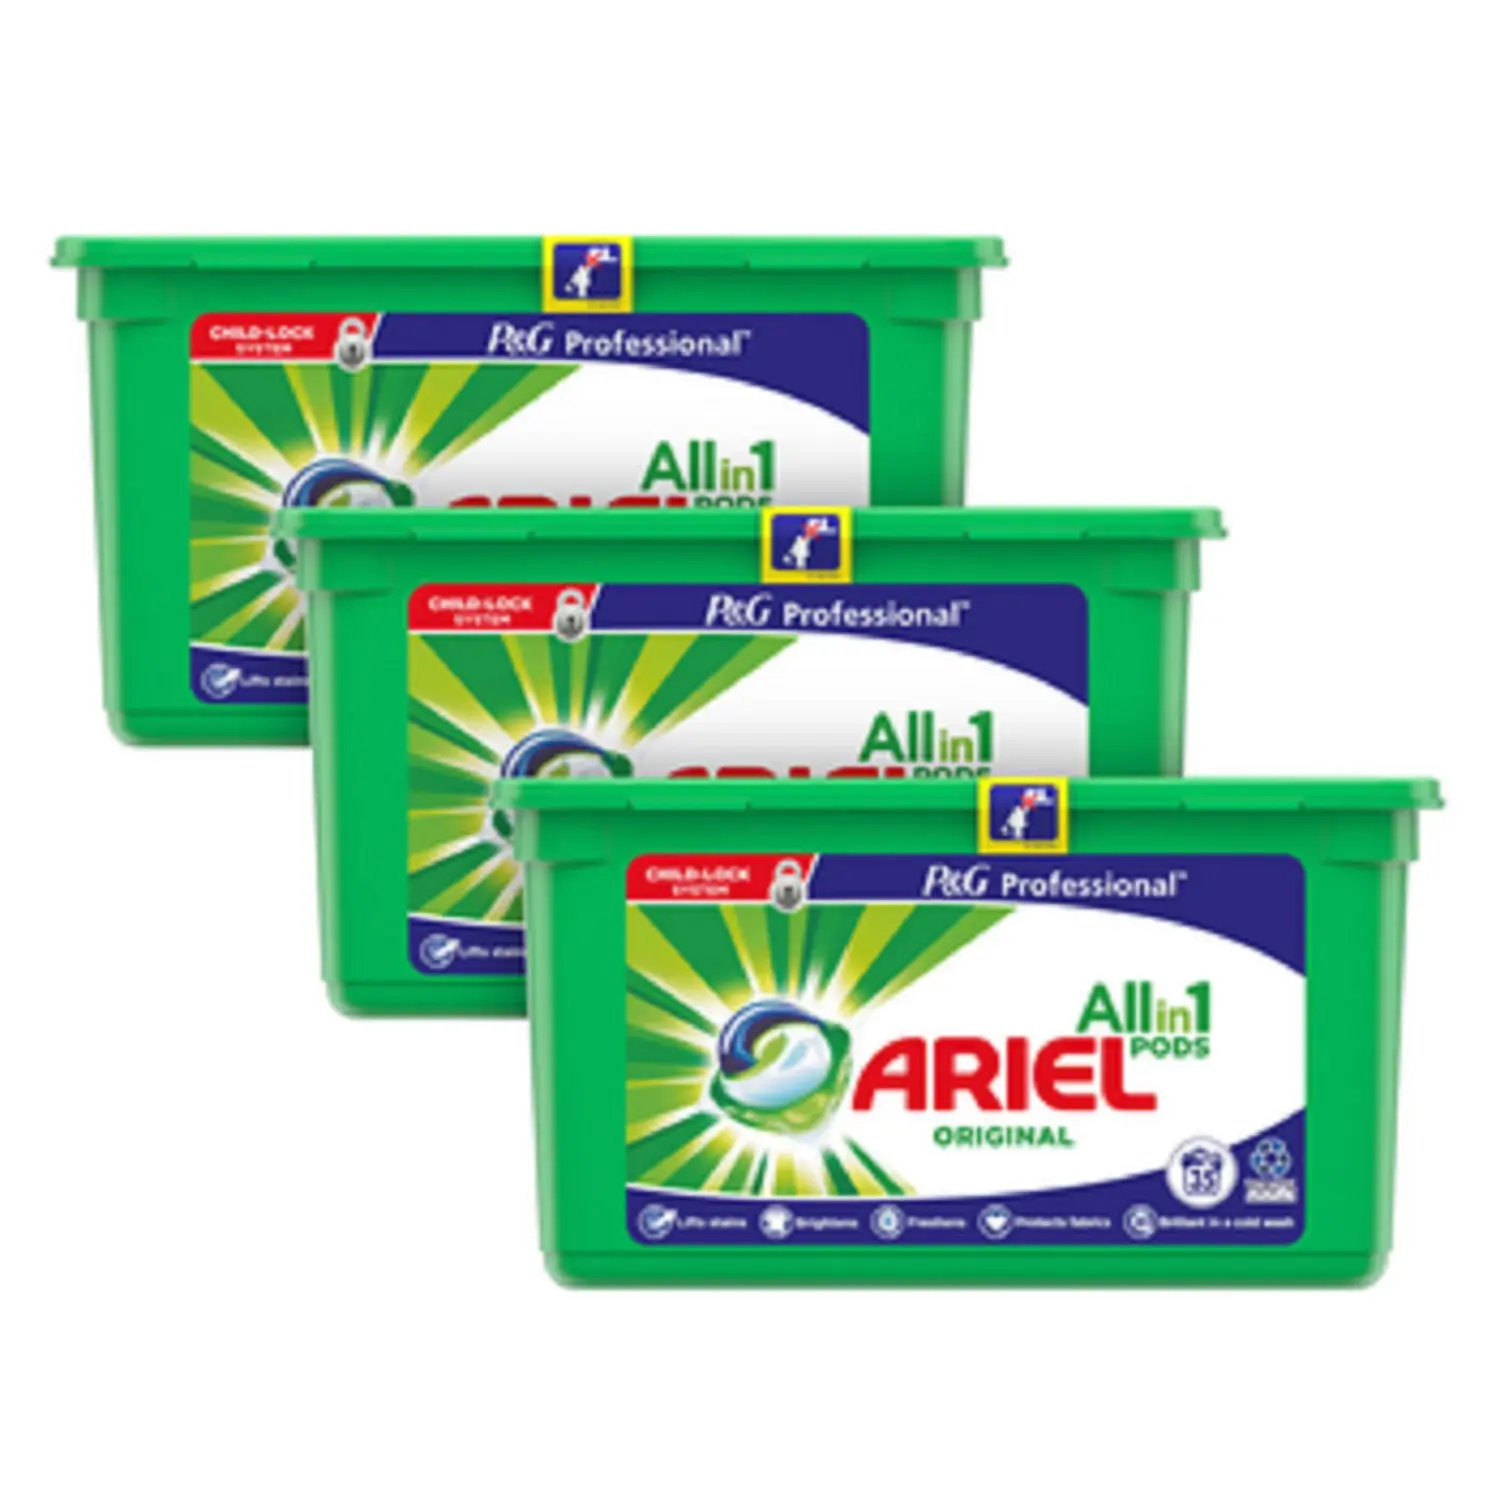 Hot sale Ariel Complete Detergent Washing Powder - 500 g with Free 200 g